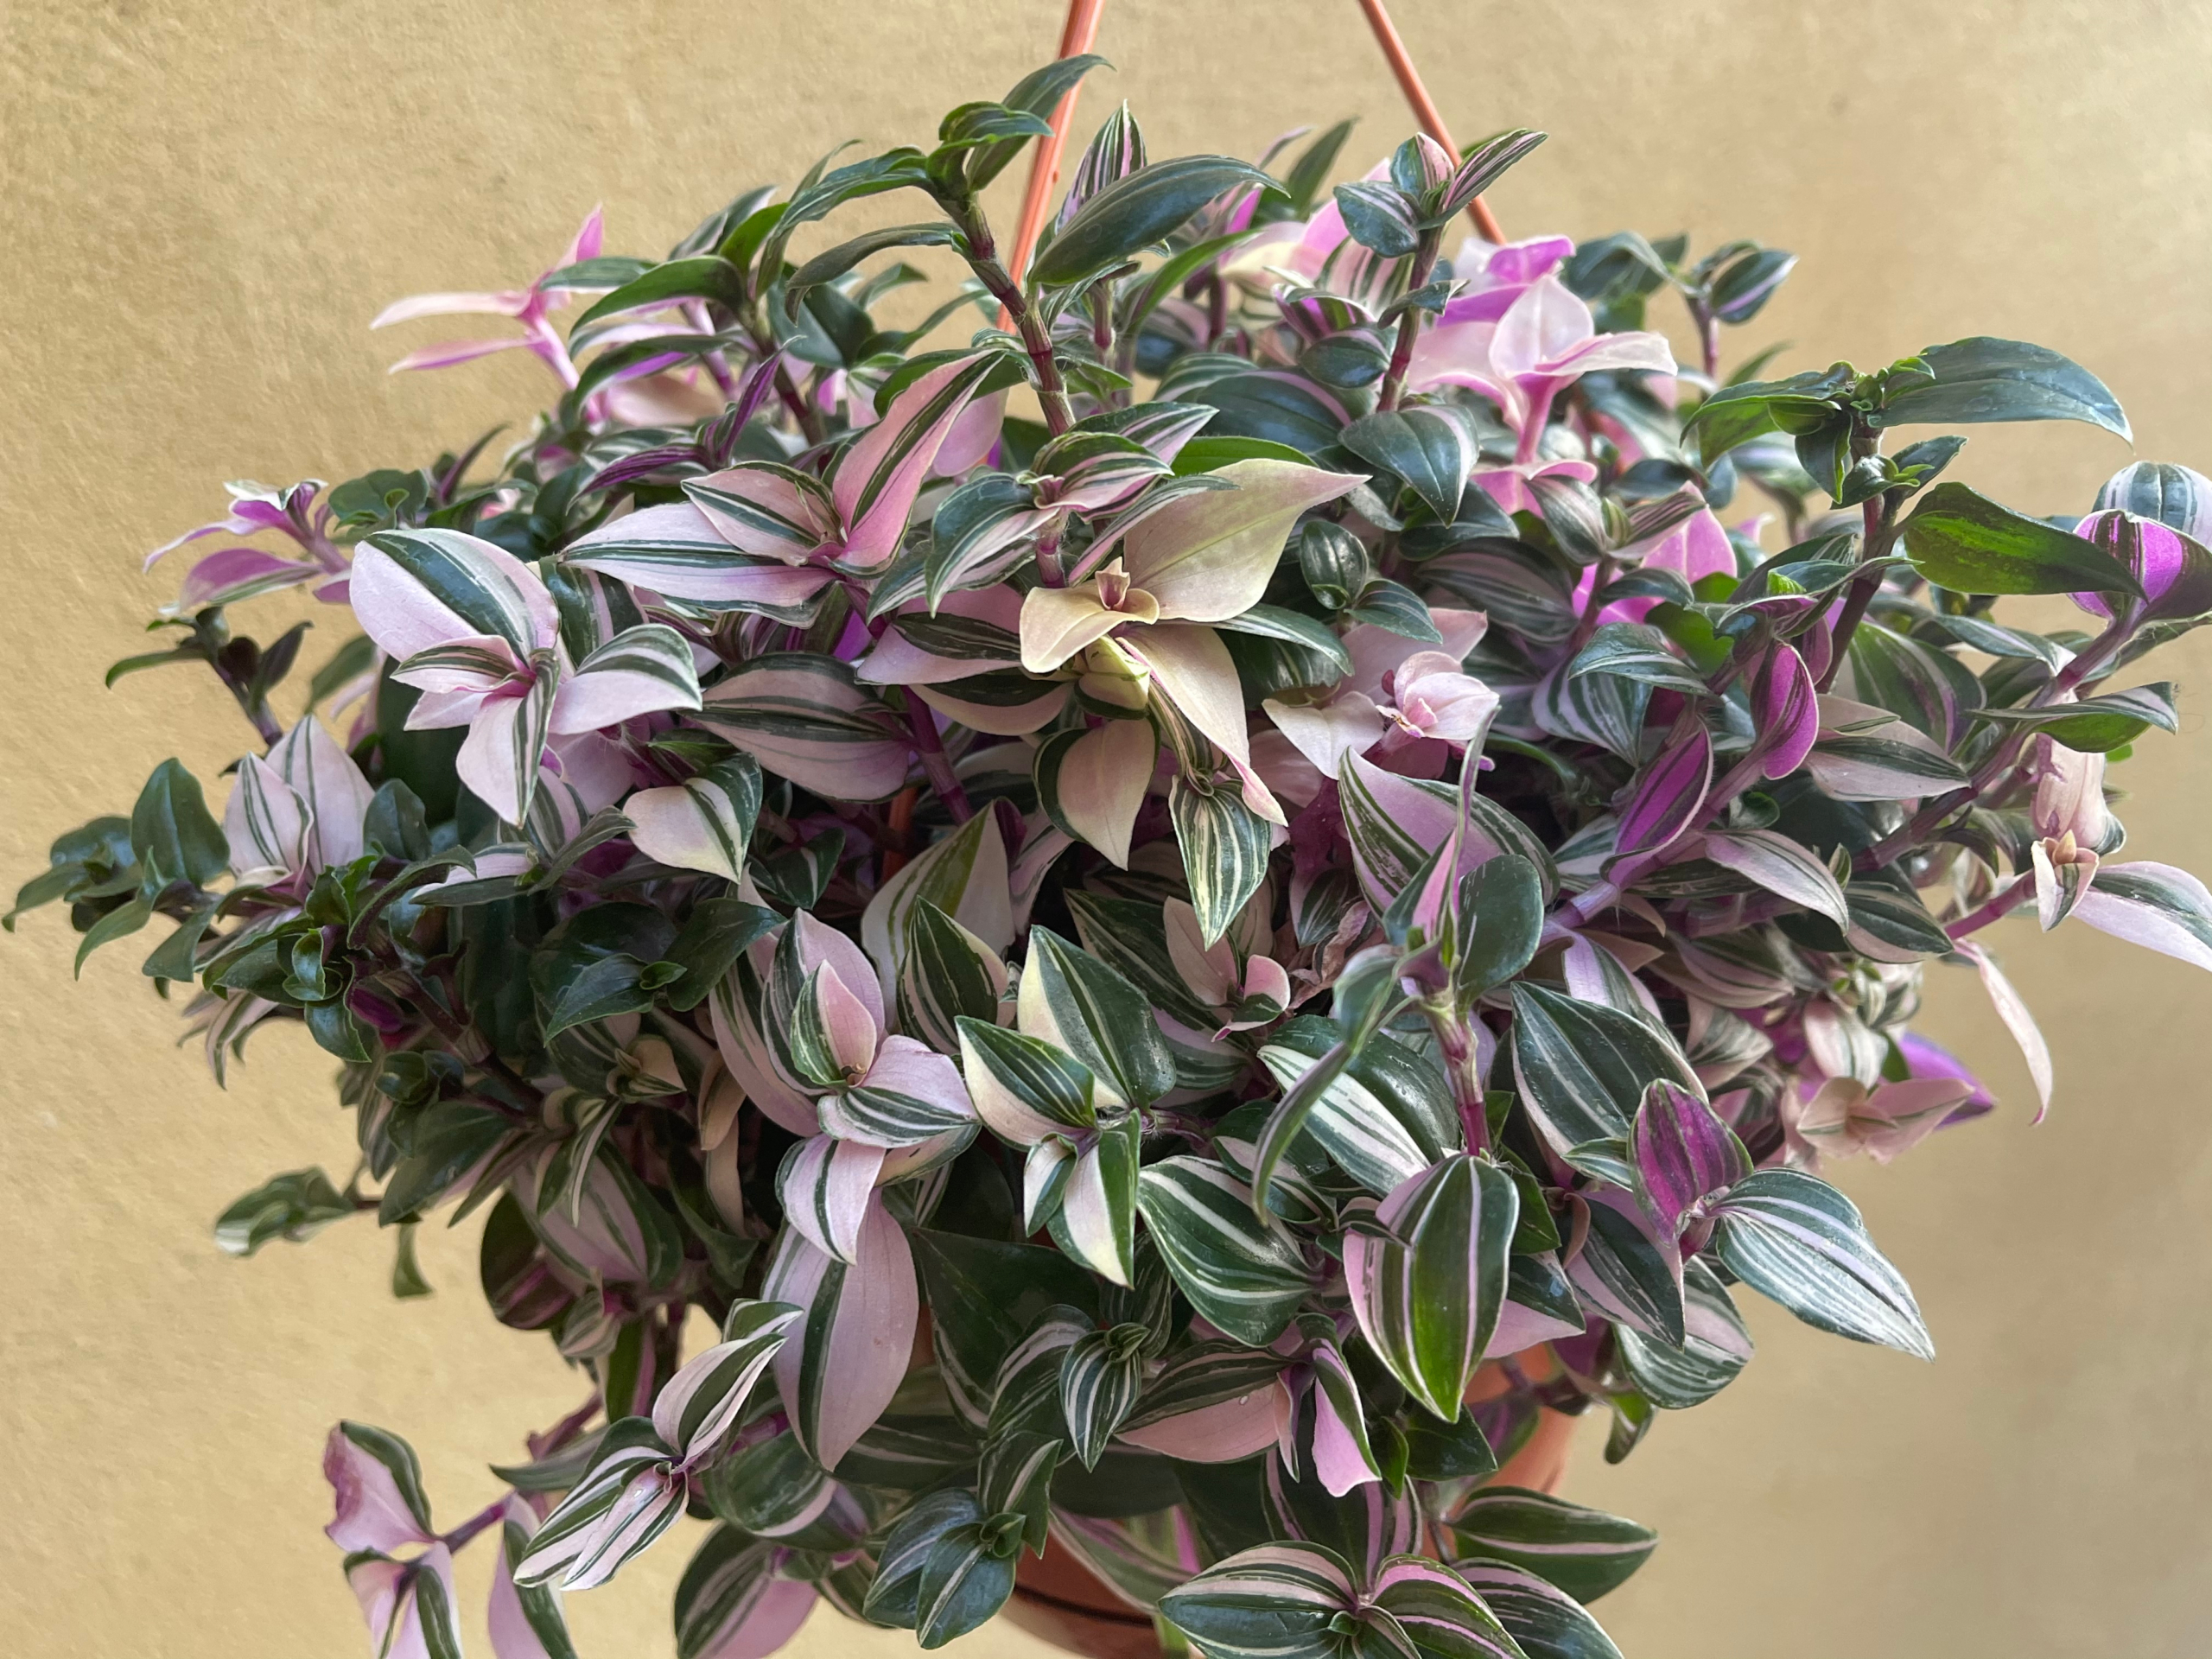 Cây Thài lài tía là ngôi sao trong các loài cây cảnh, với khí chất lãng mạn, có thể trồng trong chậu hoa treo, là lựa chọn tốt nhất để nâng cao phong cách trong nhà. (Ảnh: Shutterstock)